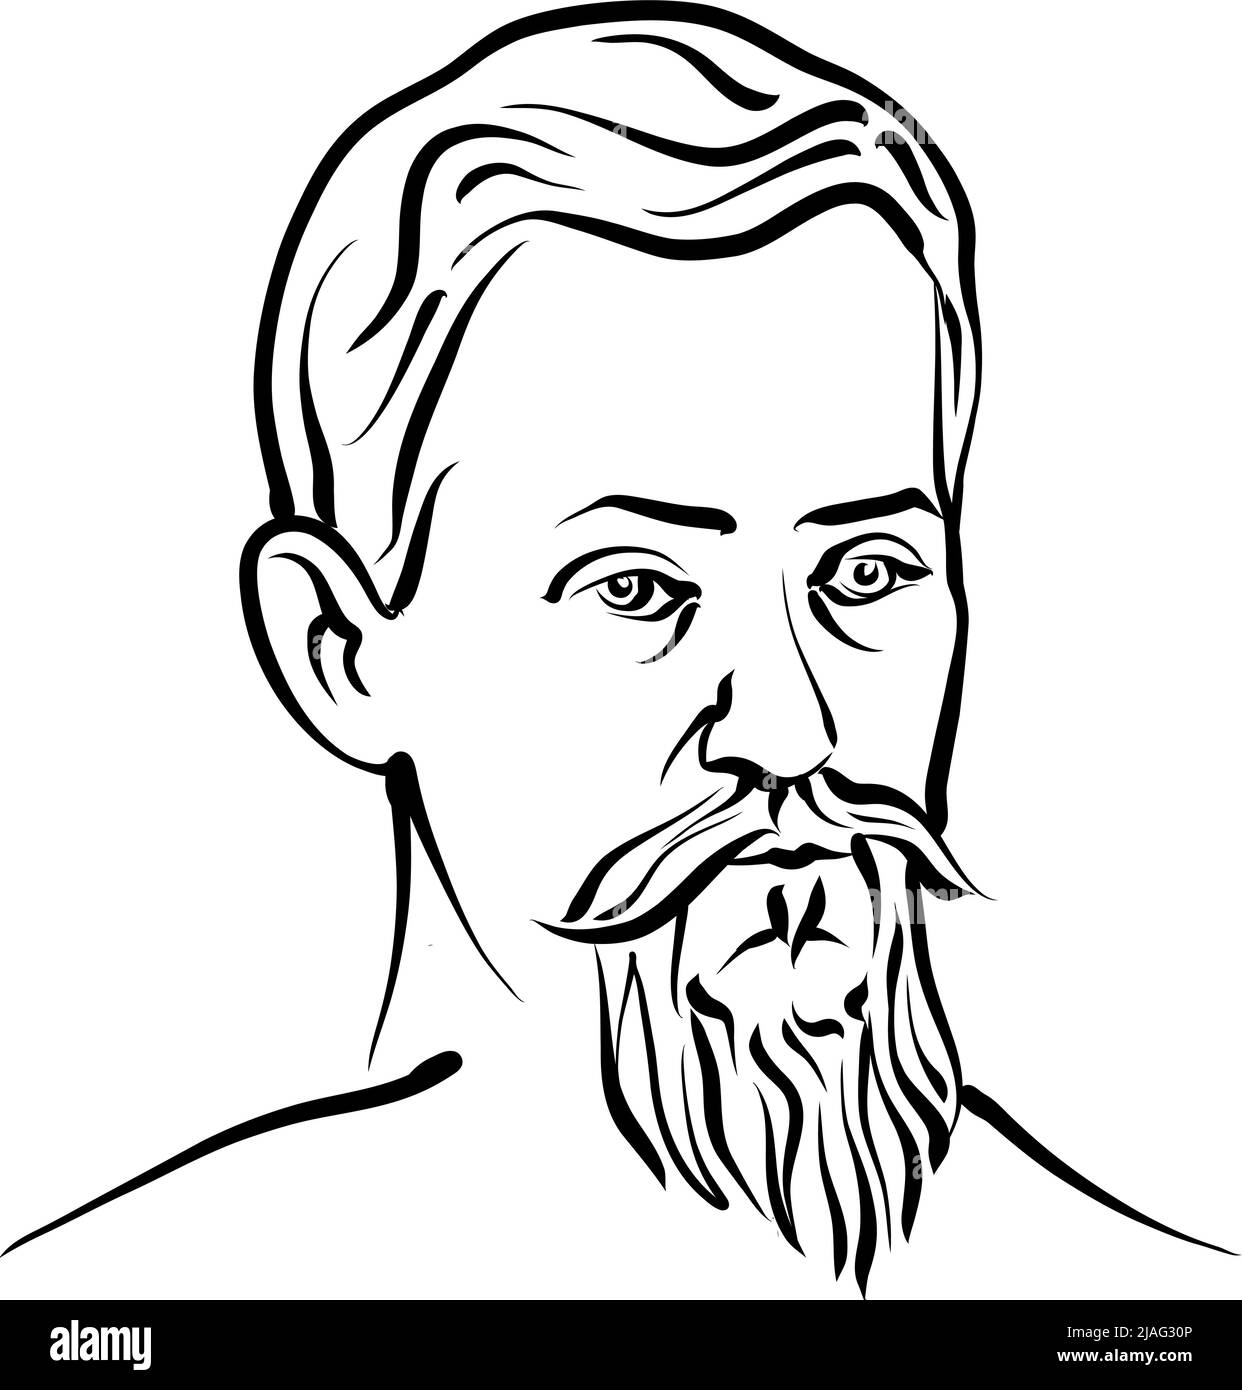 Johannes Kepler disegno vettoriale moderno. Disegno a mano dell'artista Knut Hebstreit. Disegno per uso su qualsiasi progetto di marketing e per la rivendita come Illustrazione Vettoriale